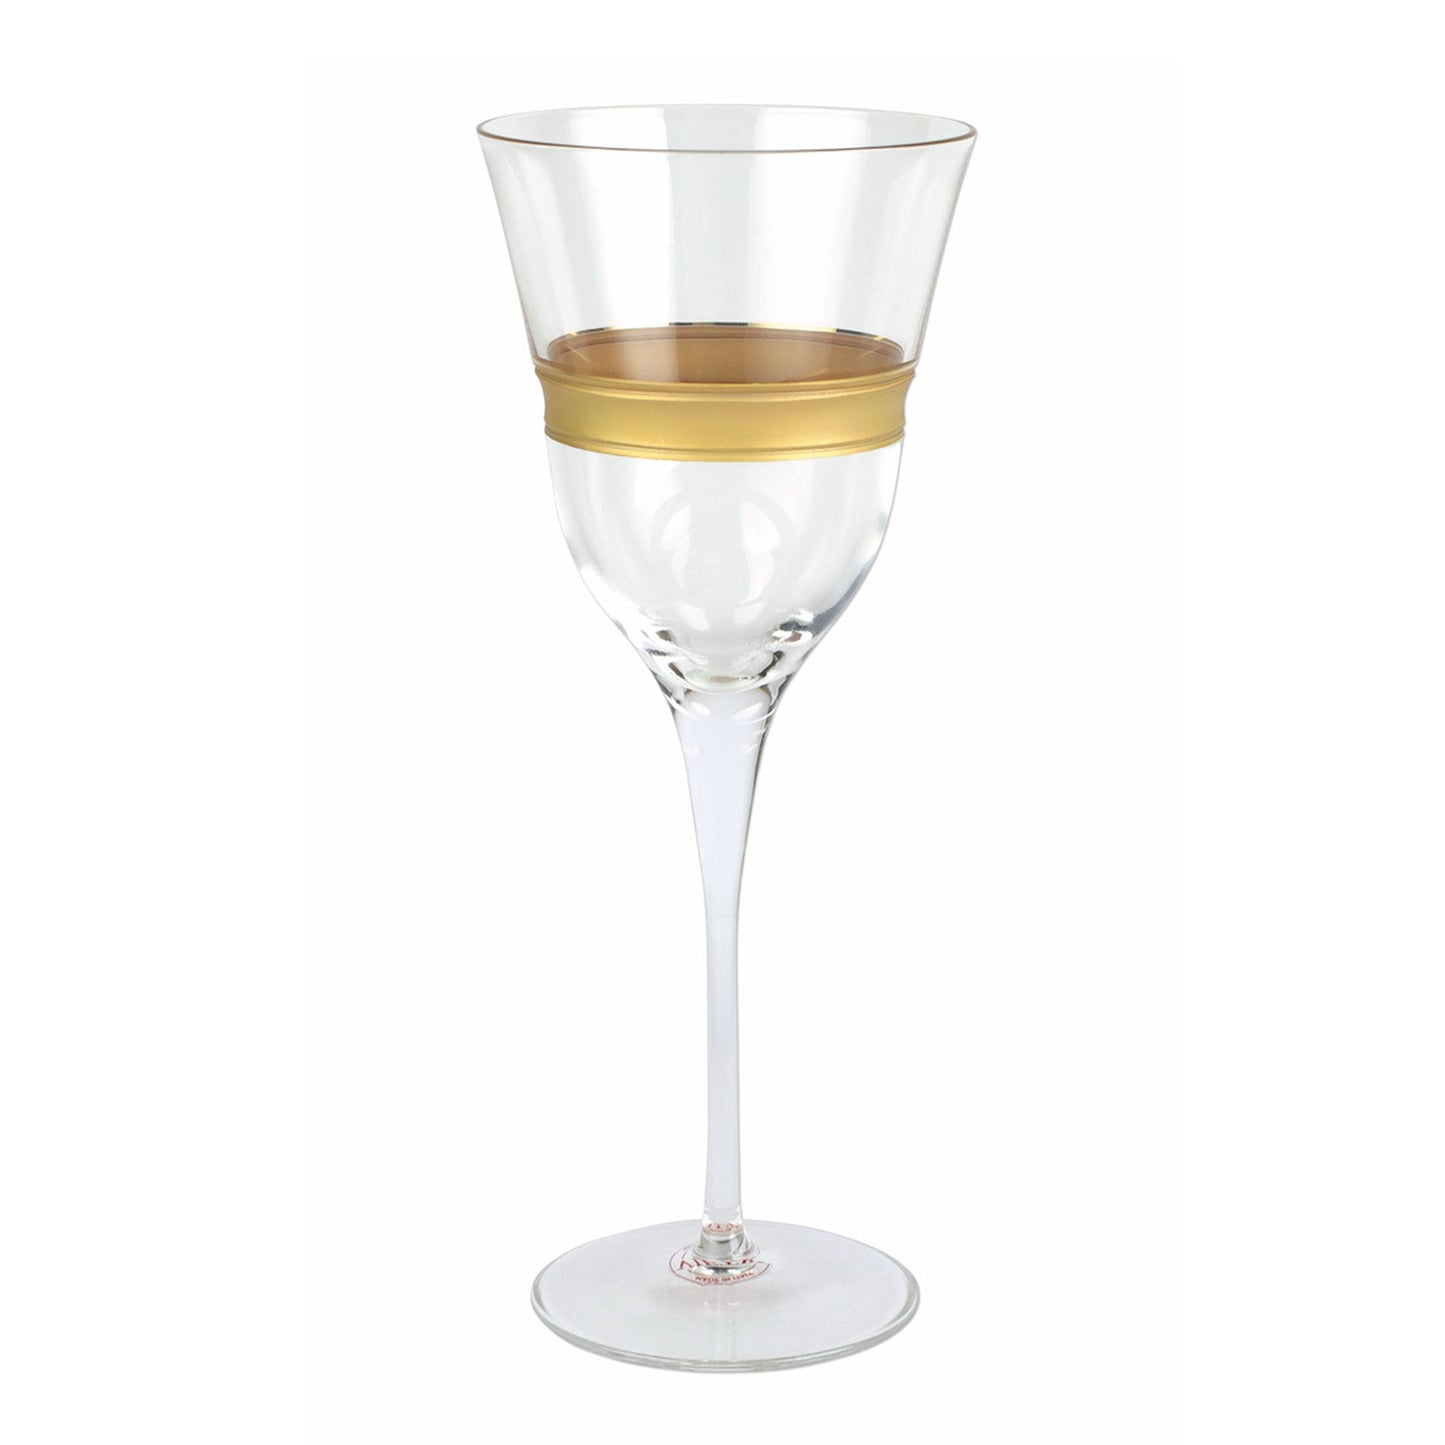 Raffaello Wine Glass